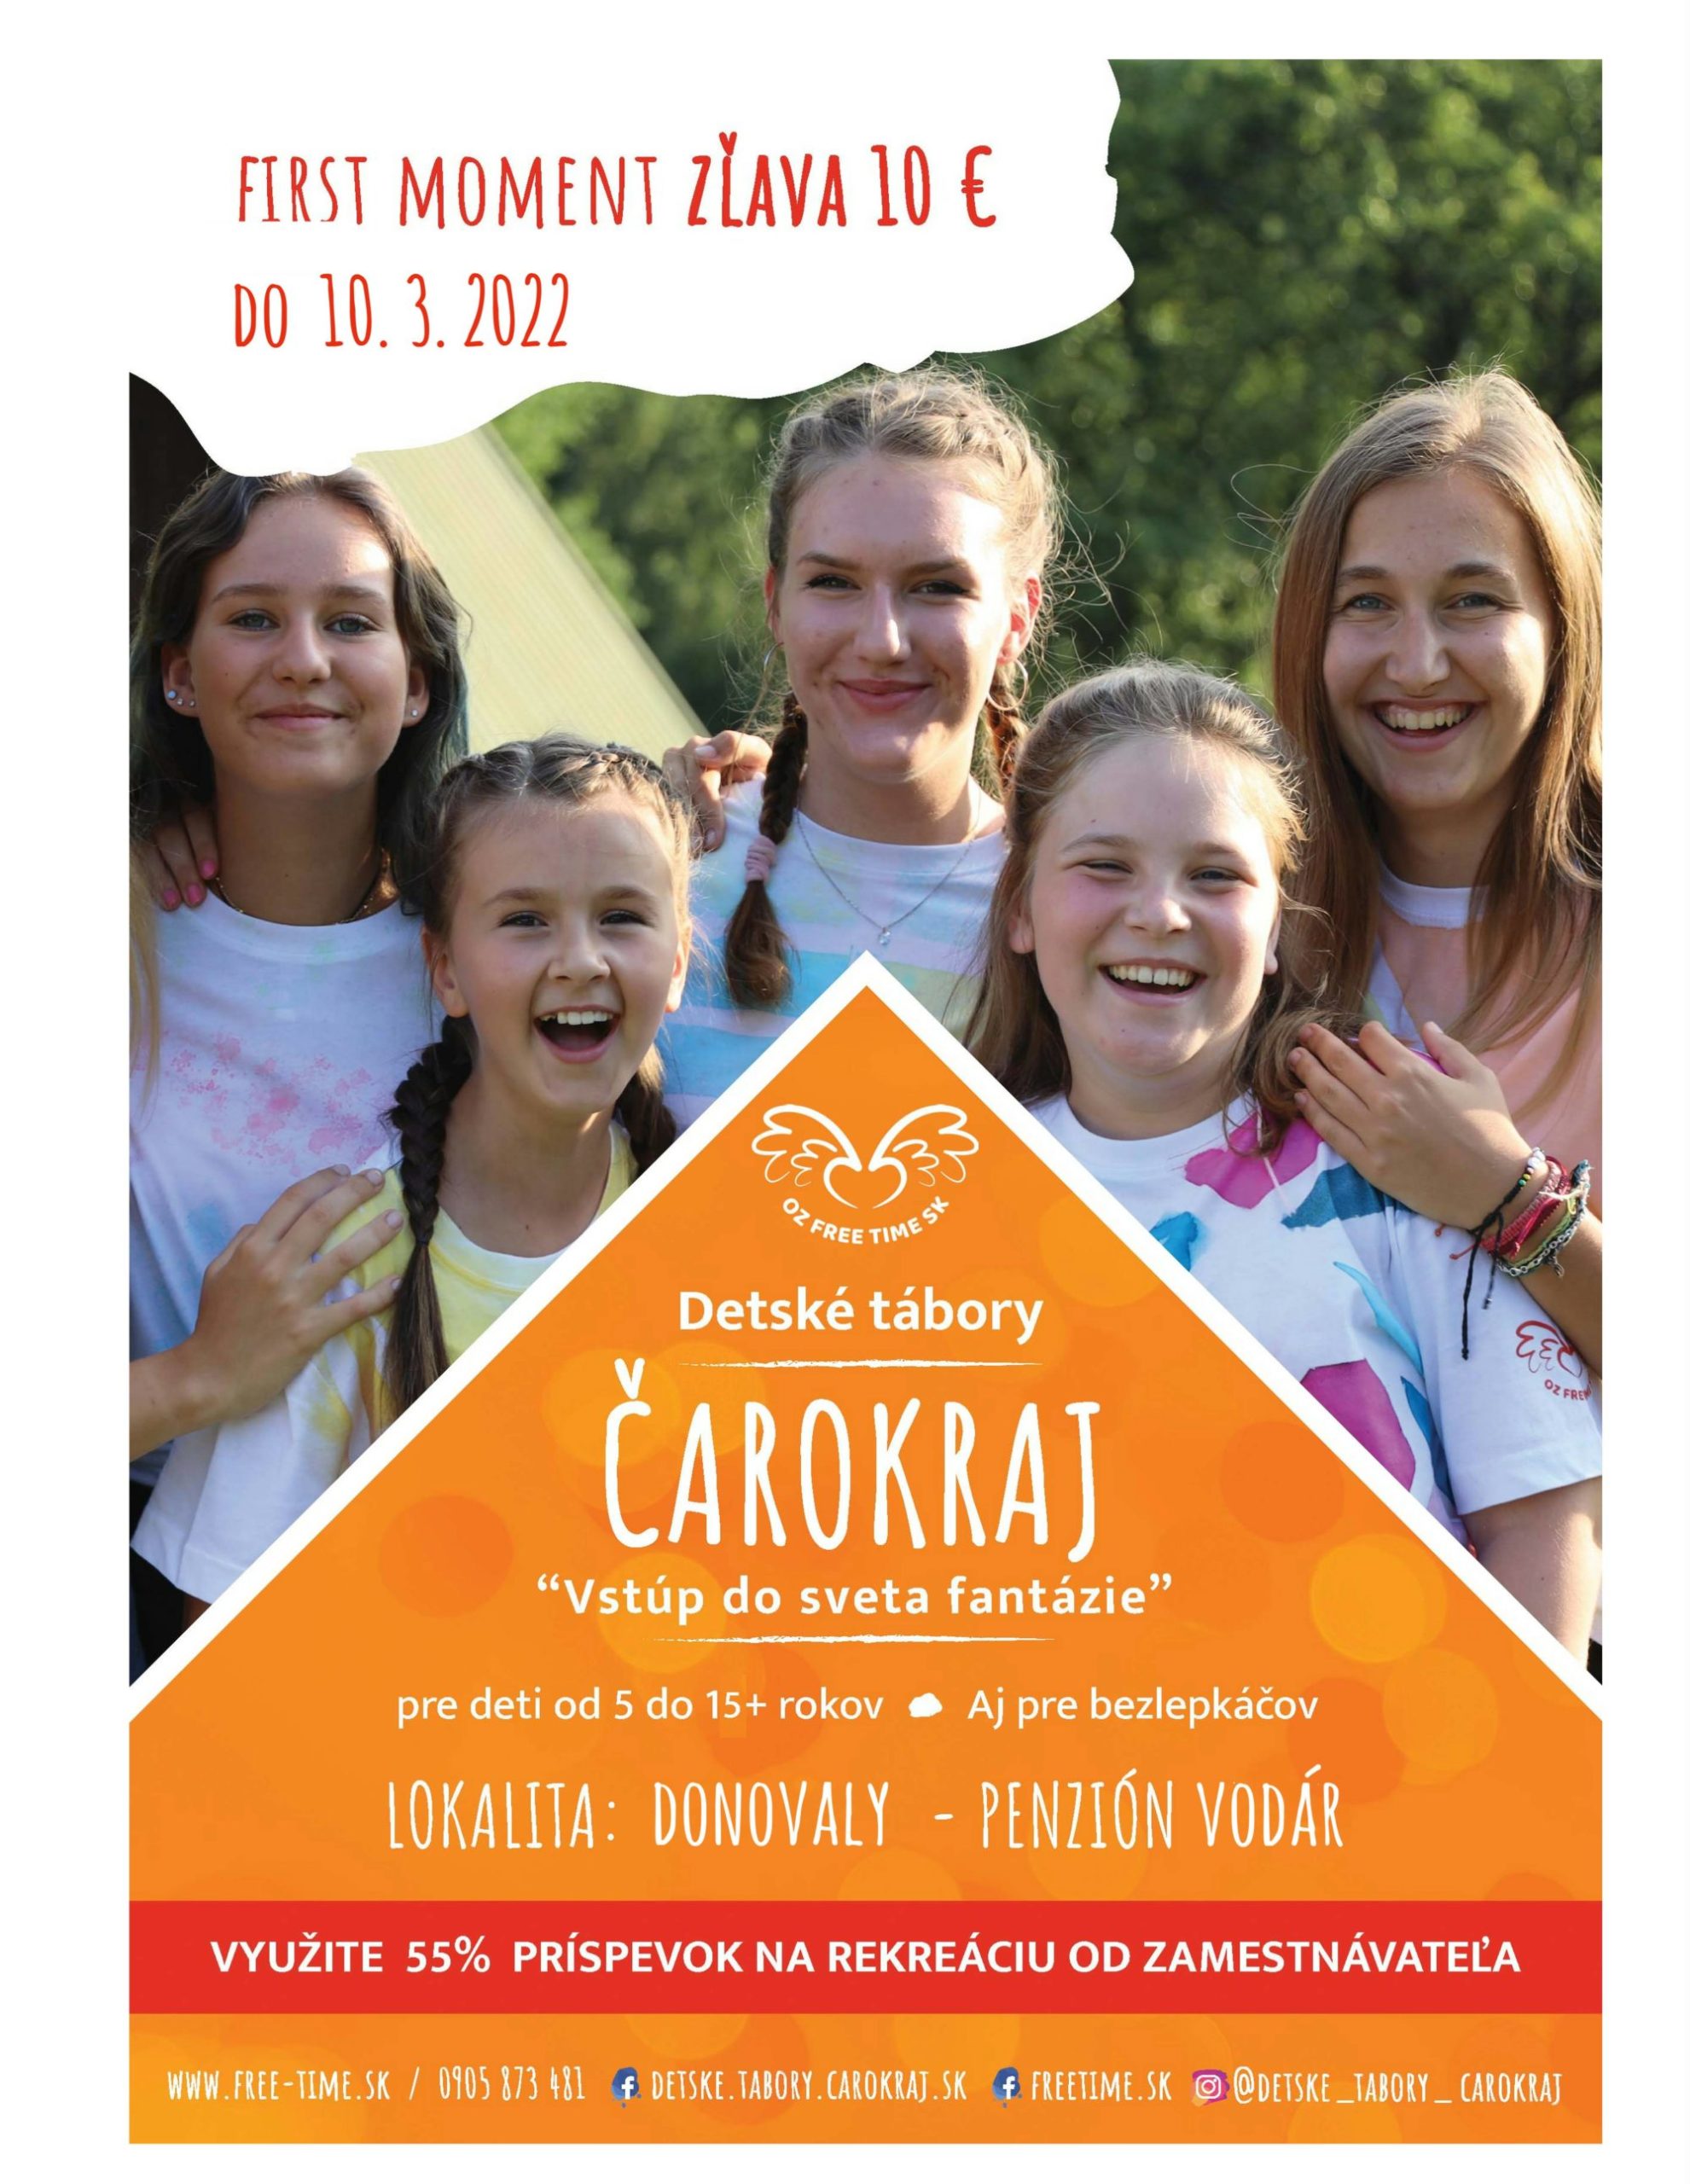 Detský tábor Čarokraj s OZ FREE TIME SK